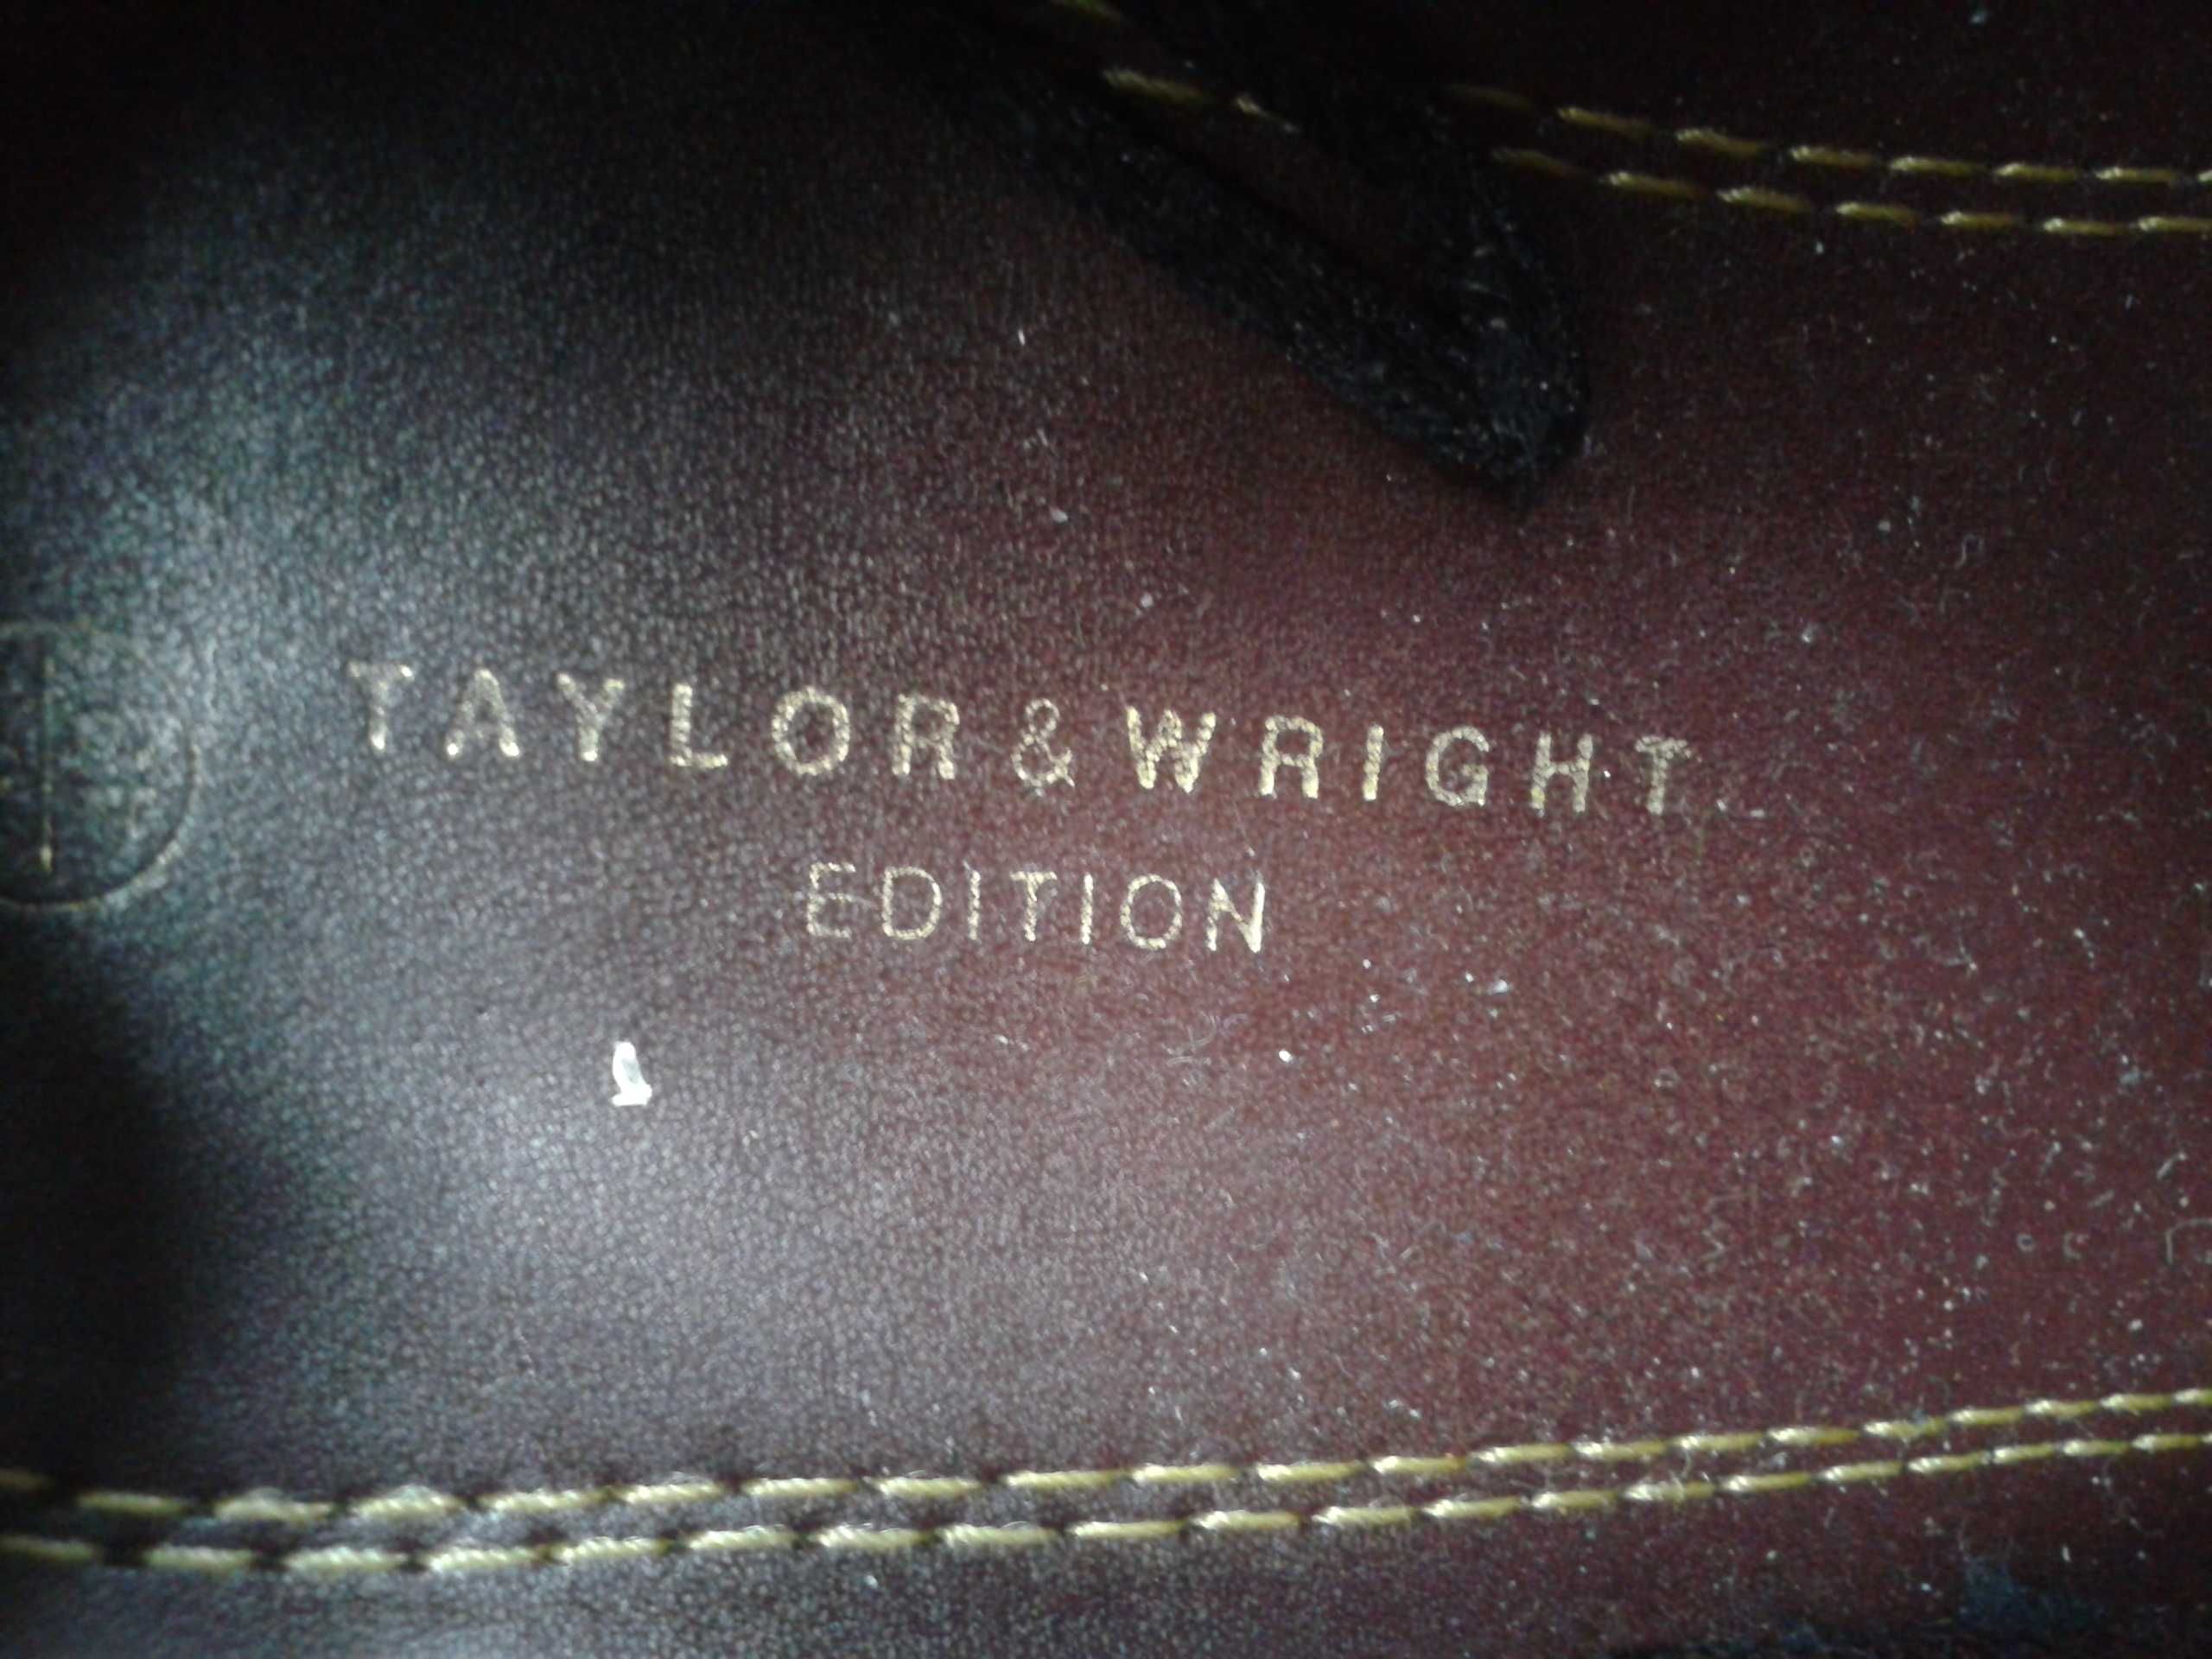 buty letnie Taylor Wright jak nowe skorzane tania wysylka